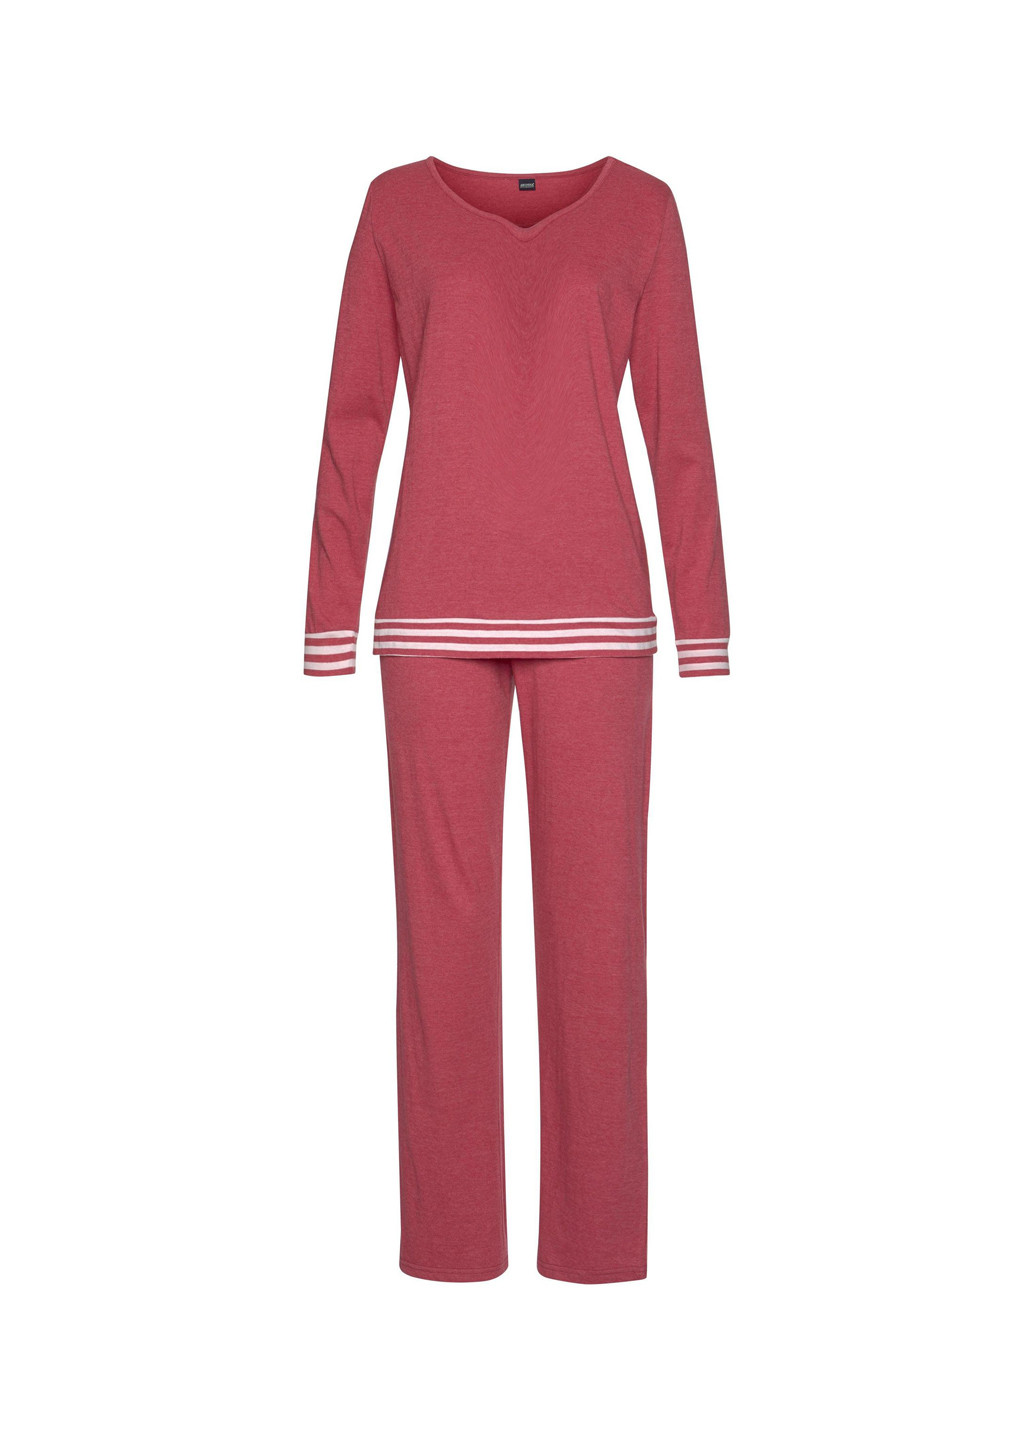 Розовая всесезон пижама (лонгслив, брюки) лонгслив + брюки Arizona